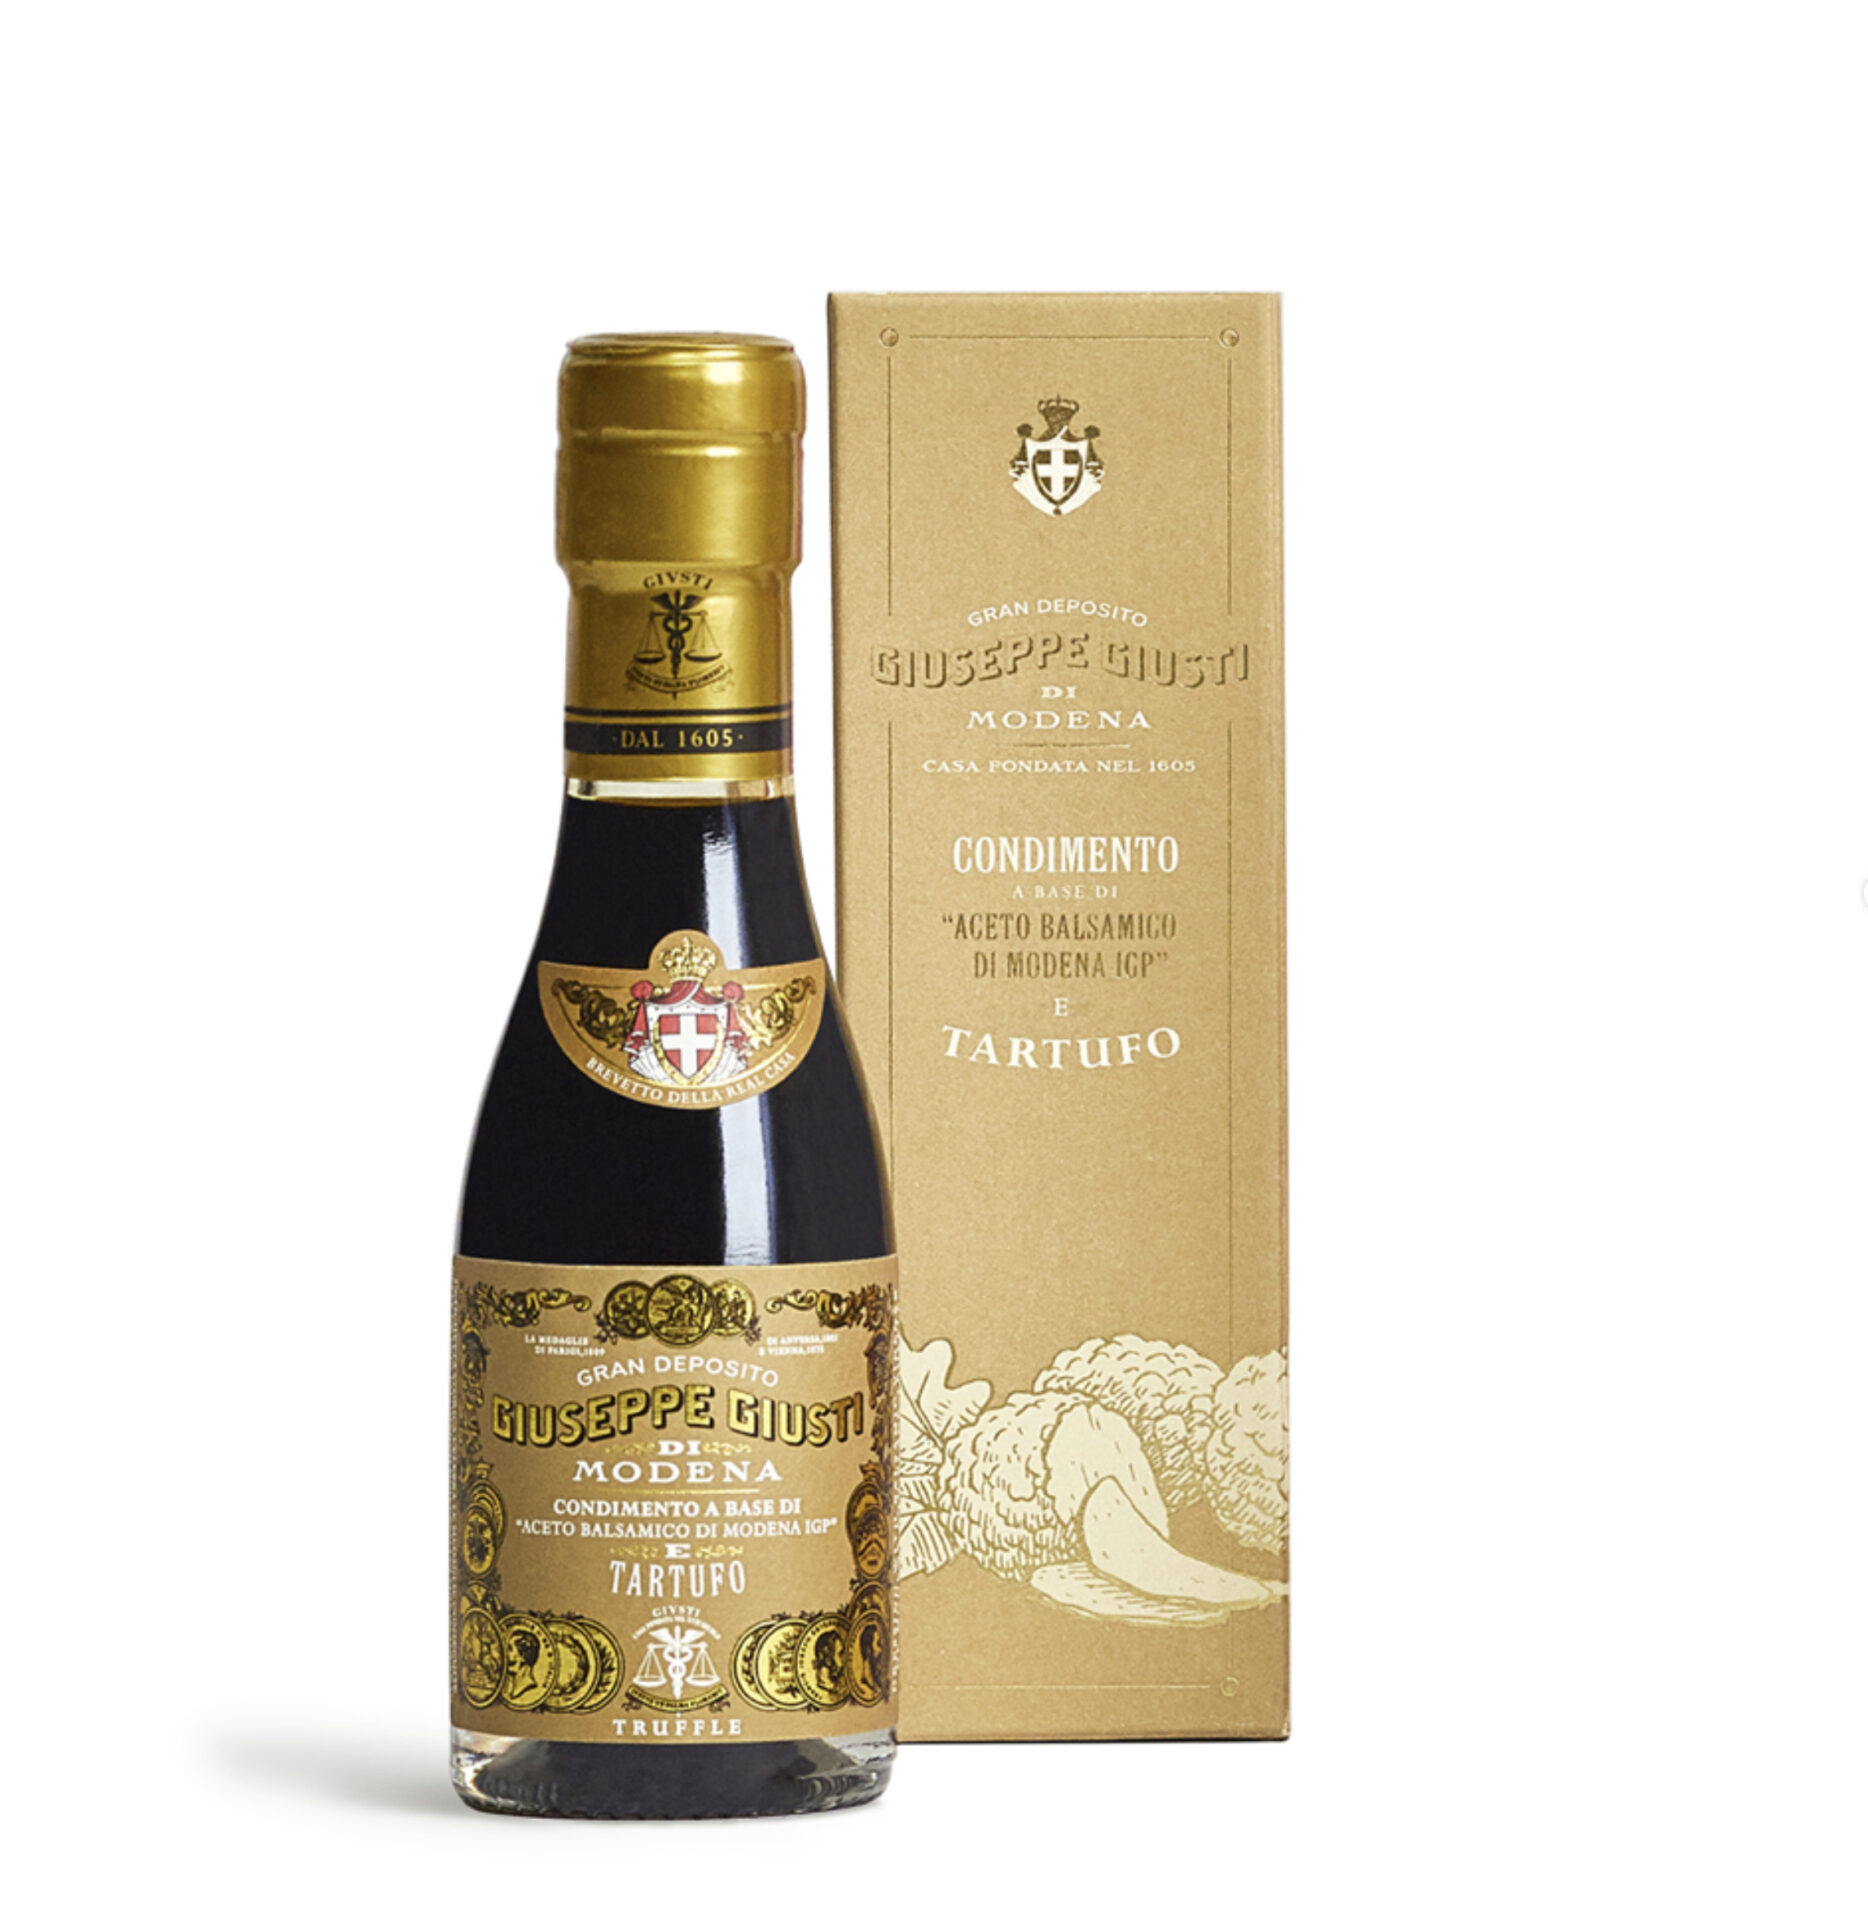 Giuseppe Giusti Gift Box with Balsamic Vinegar of Modena PGI and Truffle